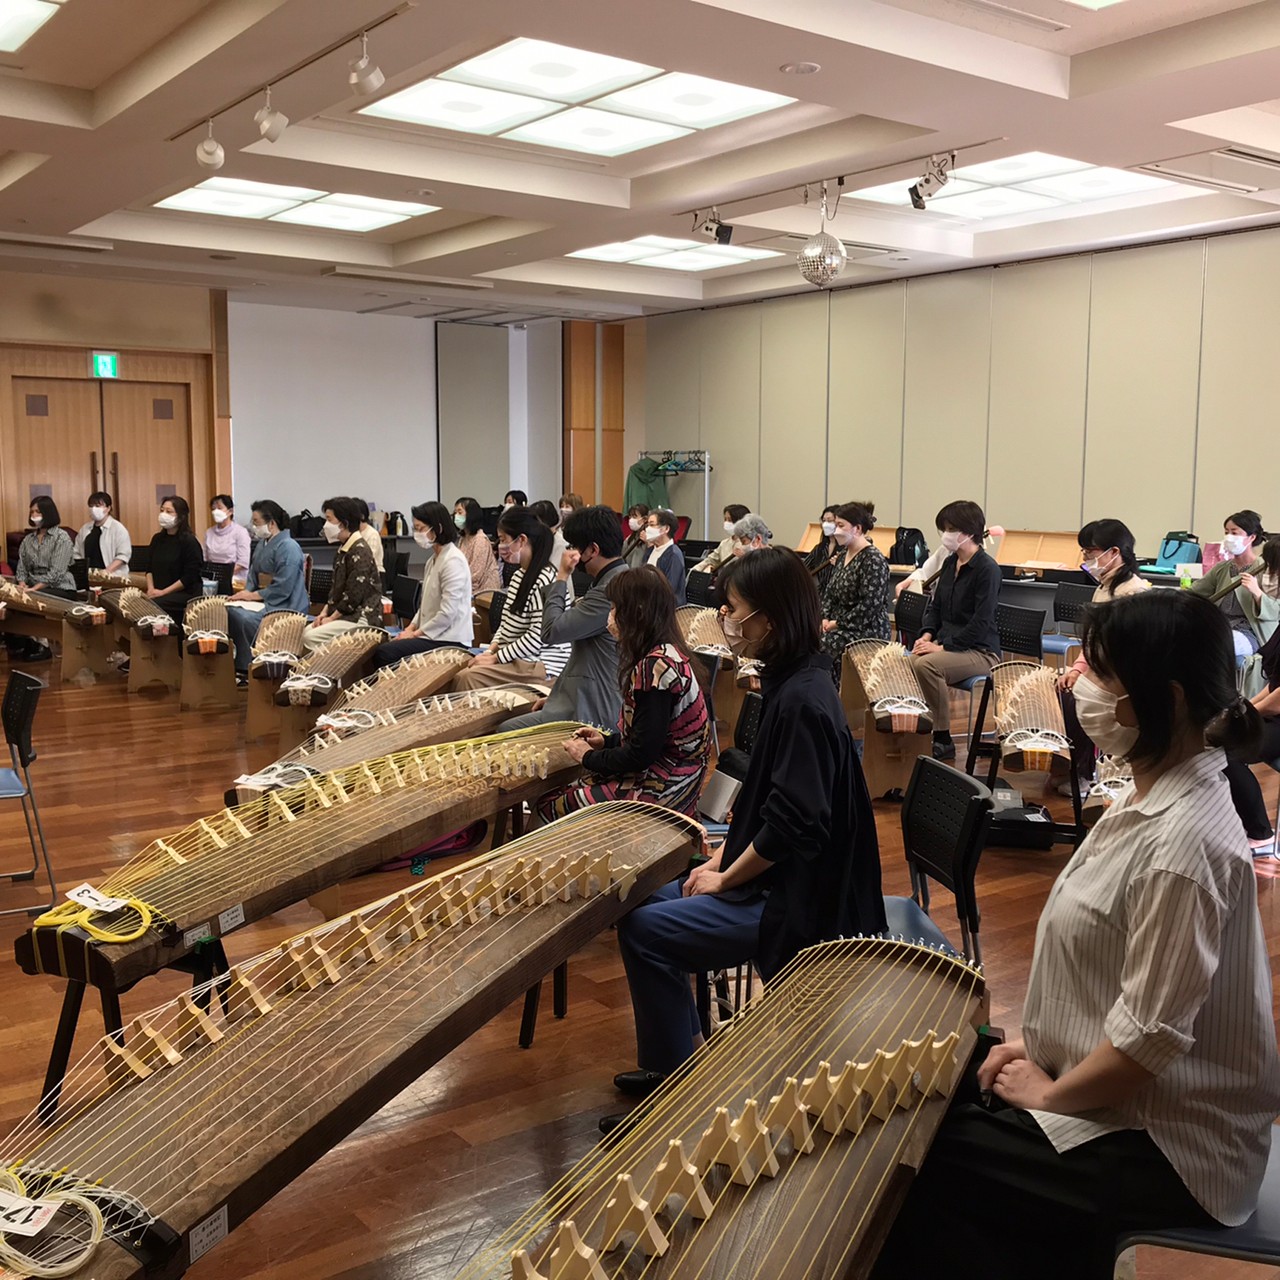 日本最大の ら 13弦お琴です。並甲、すだれ掘り、琴柱の跡も殆ど無い